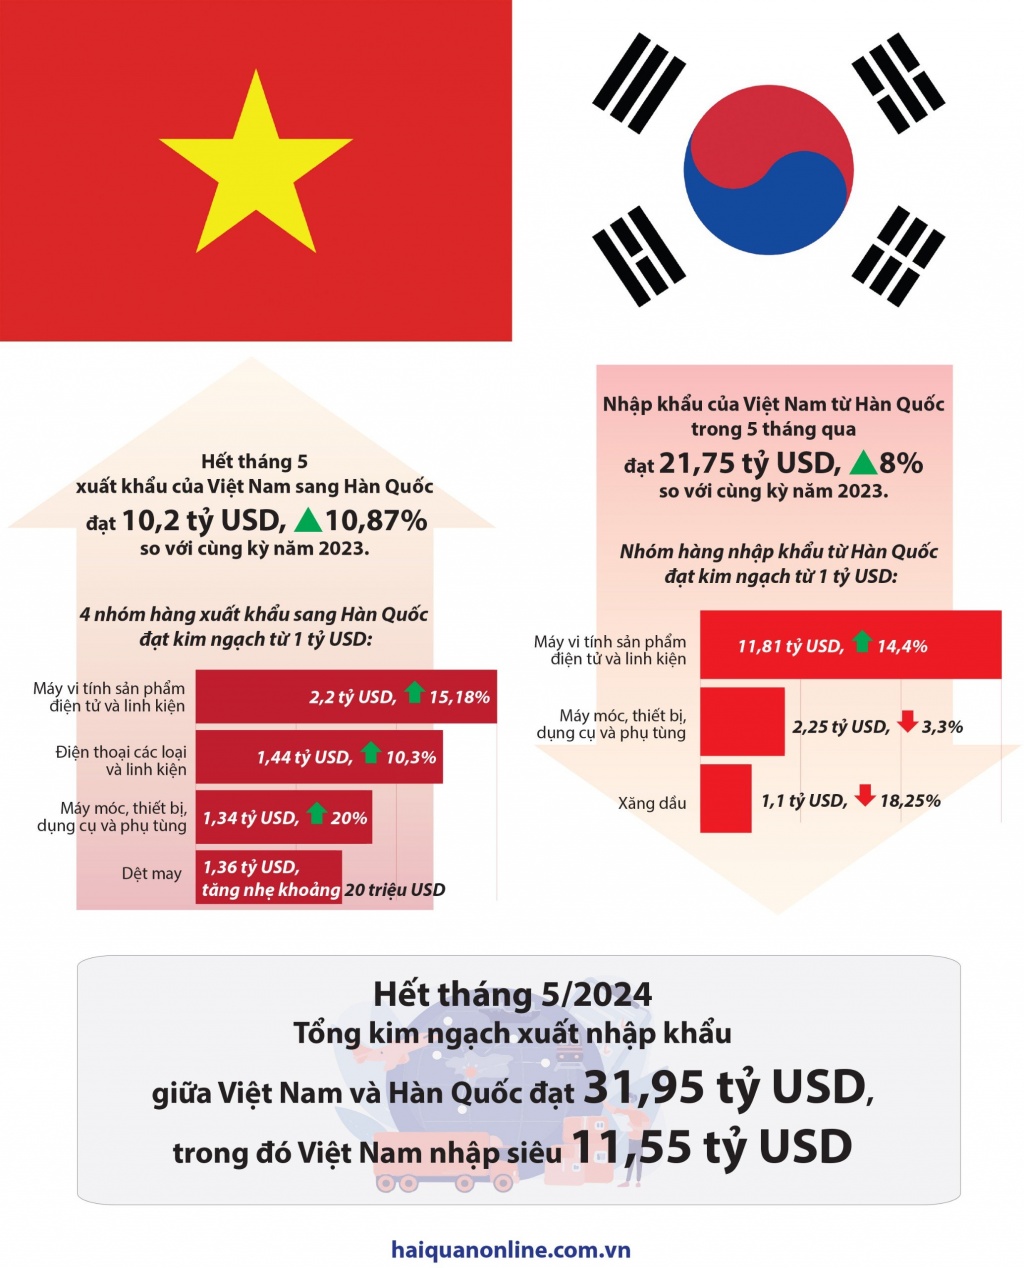 (Infographics) 7 nhóm hàng xuất nhập khẩu tỷ đô giữa Việt Nam và Hàn Quốc